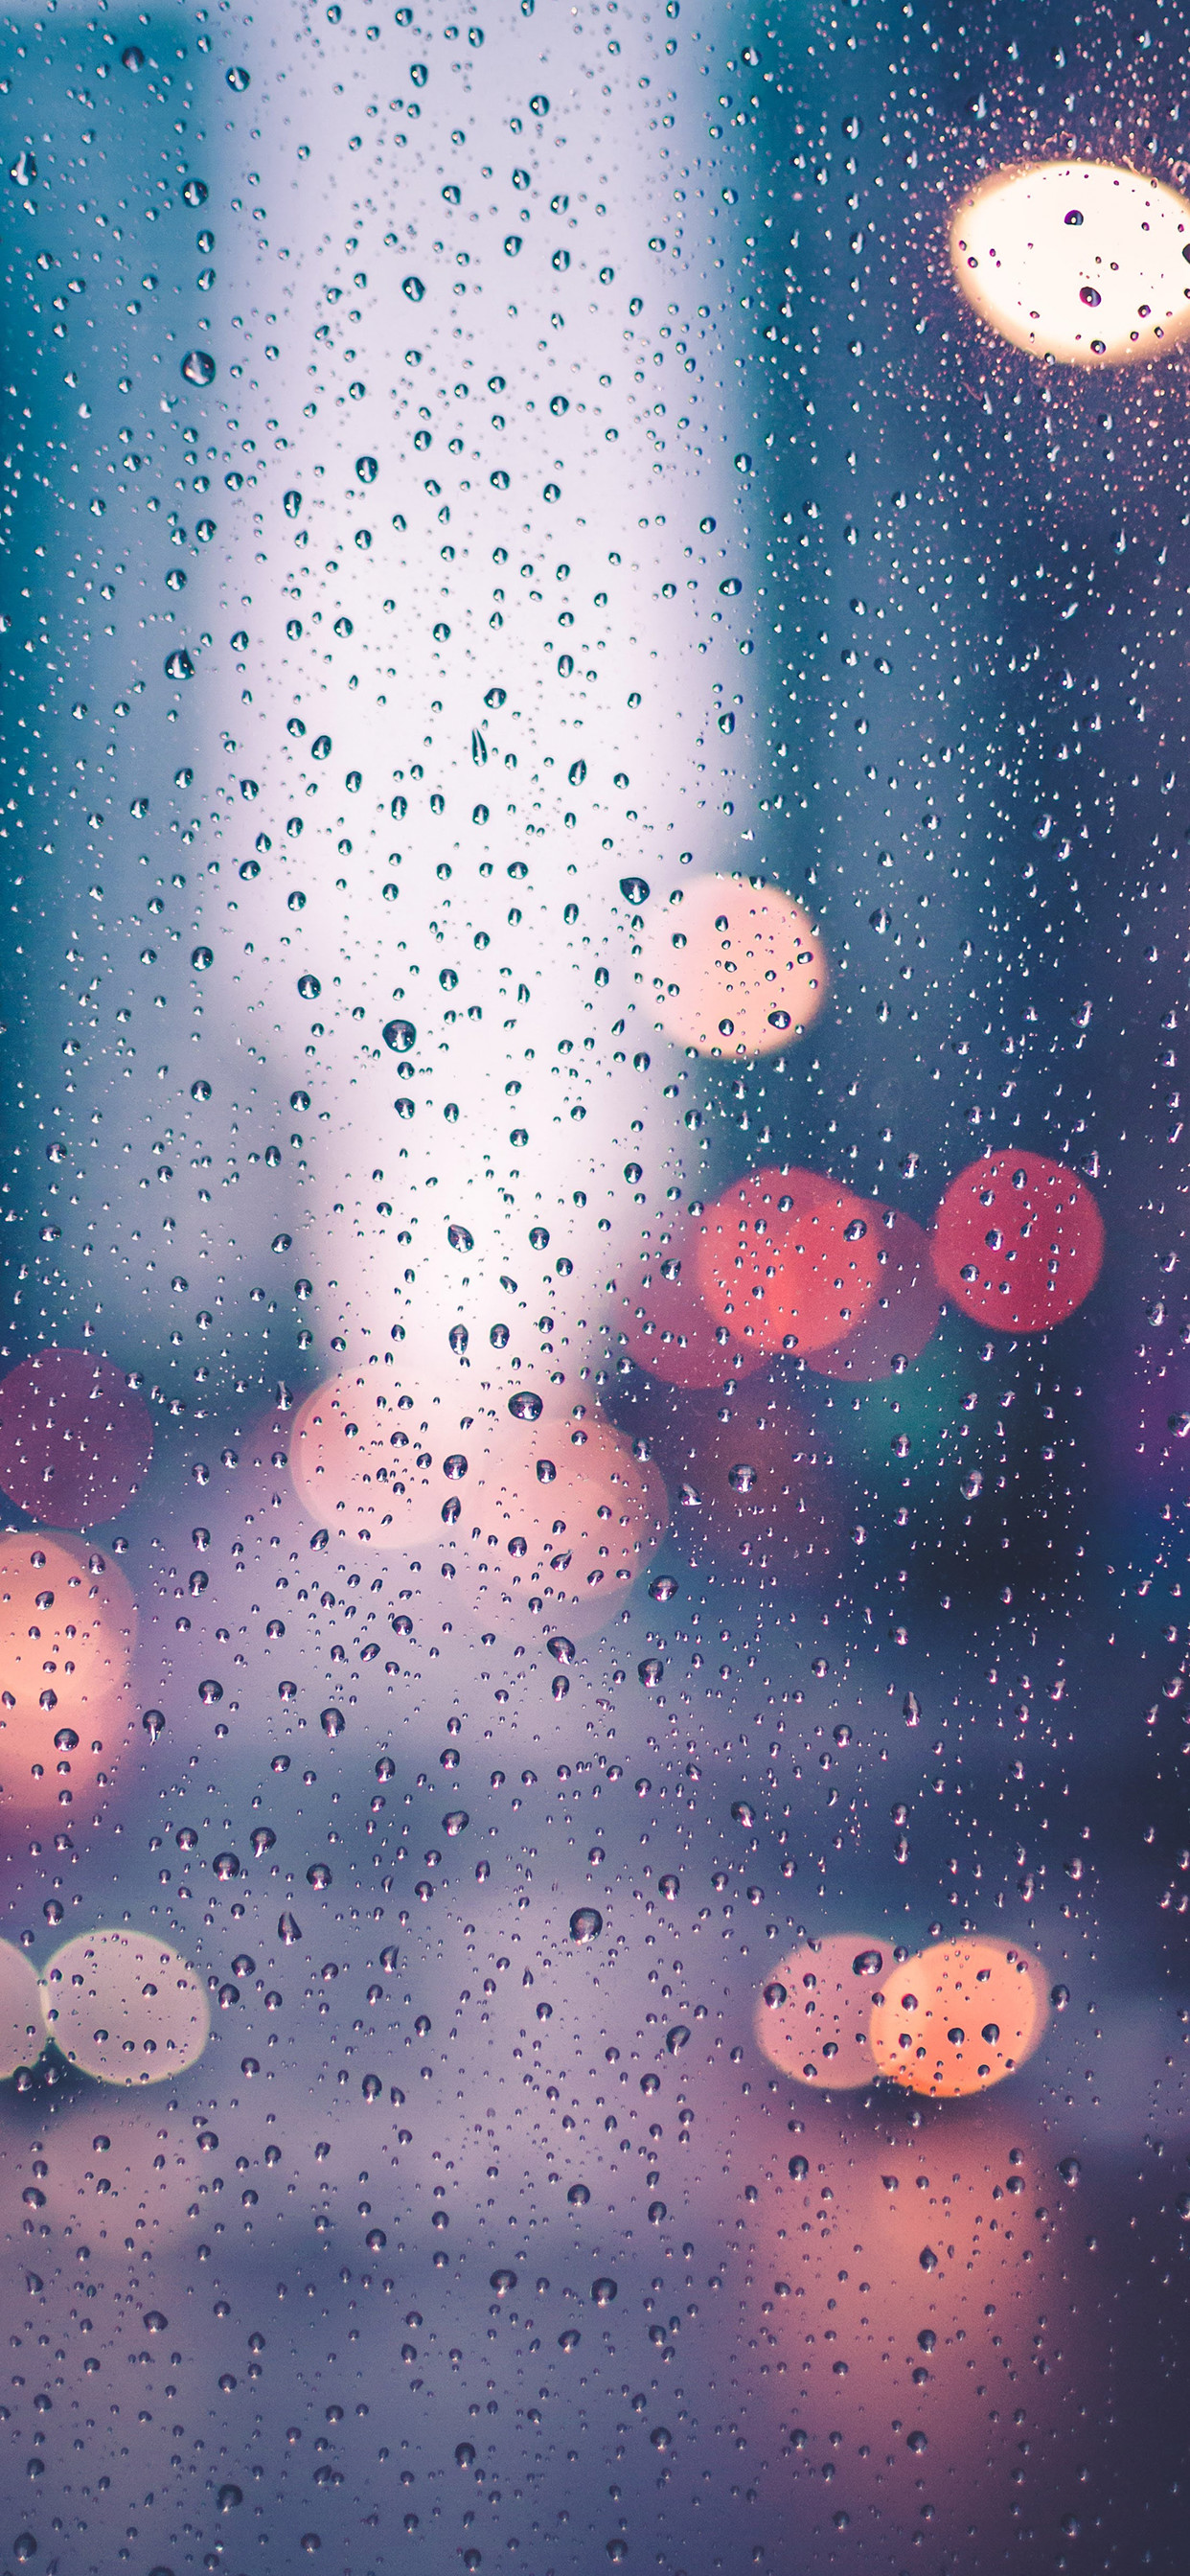 1242x2688 iPhone wallpaper raindrops c Rain drops